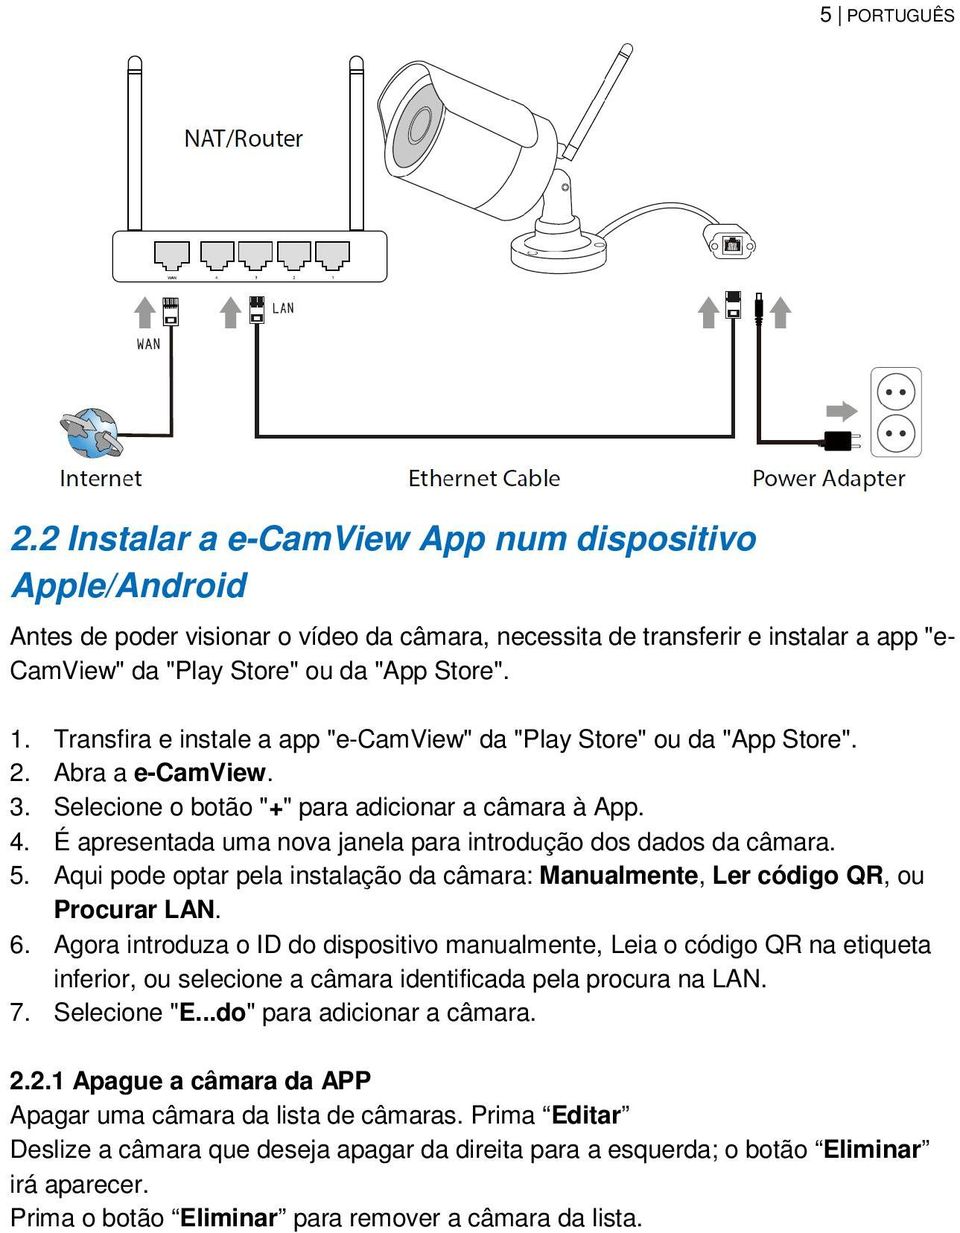 Transfira e instale a app "e-camview" da "Play Store" ou da "App Store". 2. Abra a e-camview. 3. Selecione o botão "+" para adicionar a câmara à App. 4.